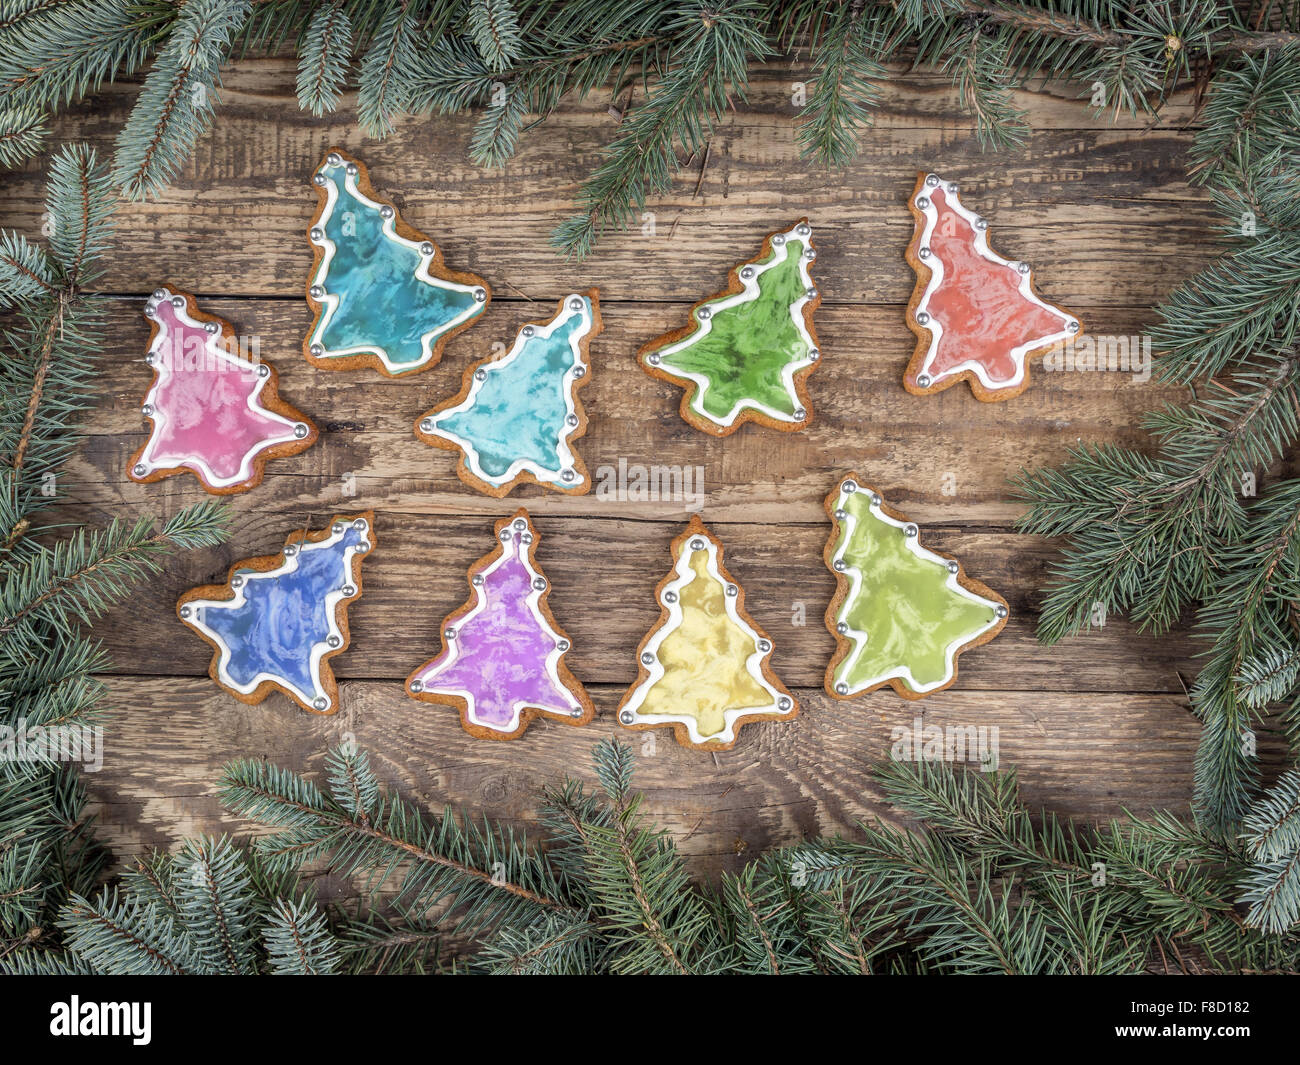 Navidad marco organizado de ramas de abeto colocado en madera rústica con placas de forma estacional gingerbread cookies Foto de stock